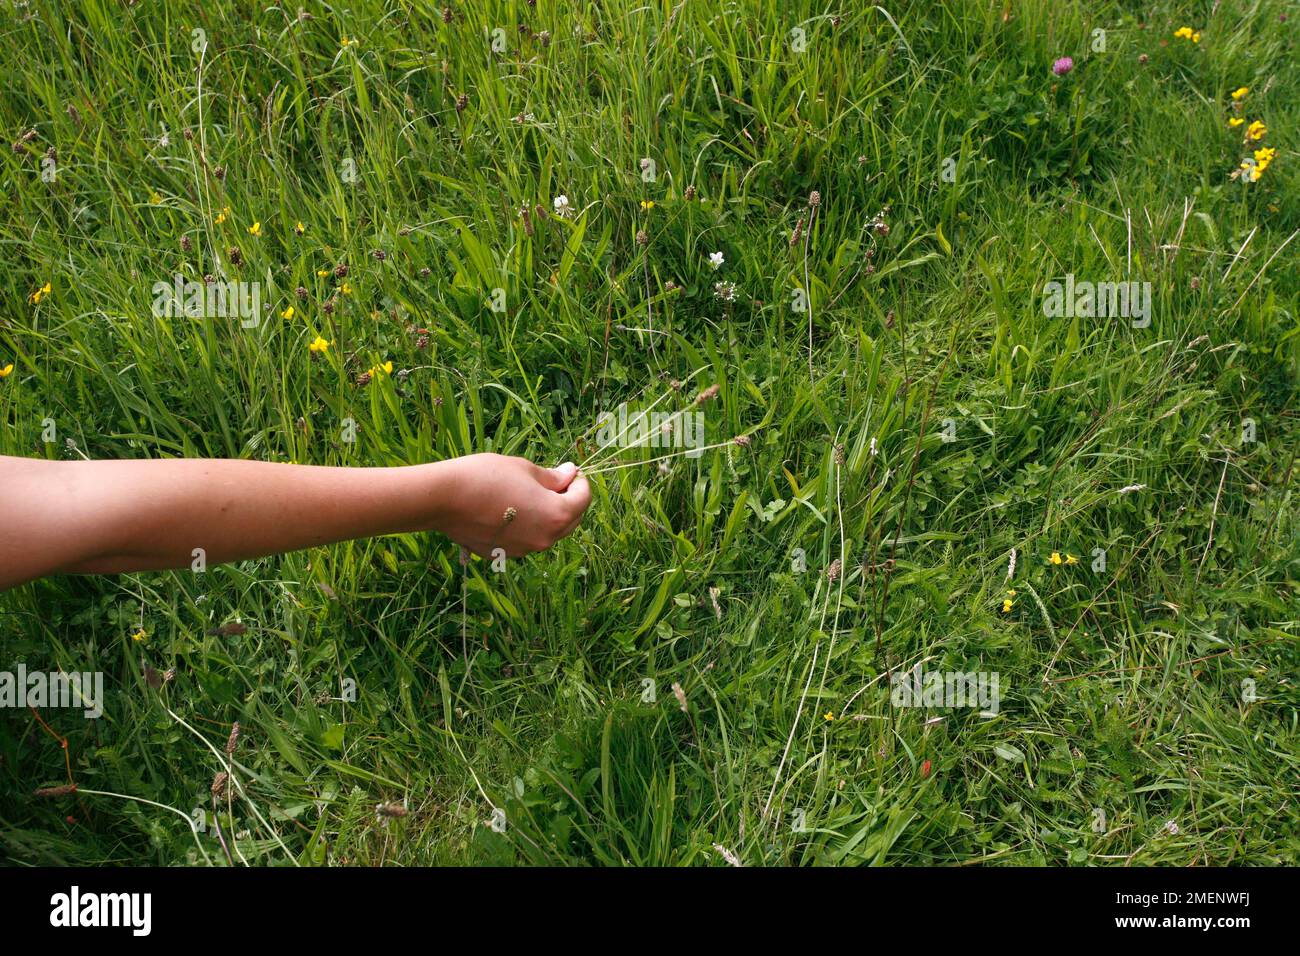 Persona che disperdere i semi di fiori selvatici a mano, tenendo testa di semi matura e scuotendolo dove vogliono che i semi seminano Foto Stock